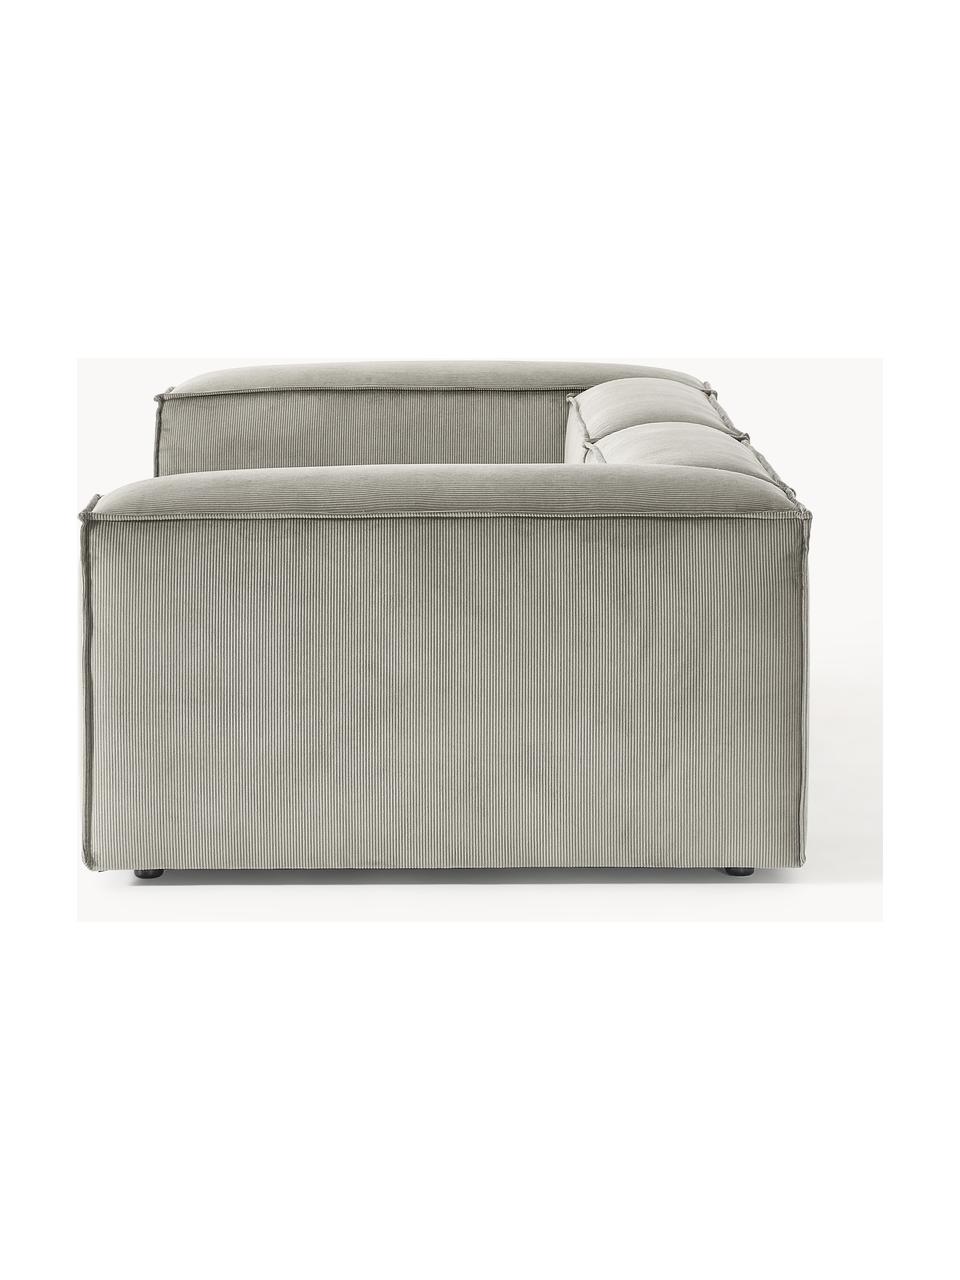 Canapé modulable 3 places en velours côtelé Lennon, Velours côtelé gris, larg. 238 x prof. 119 cm